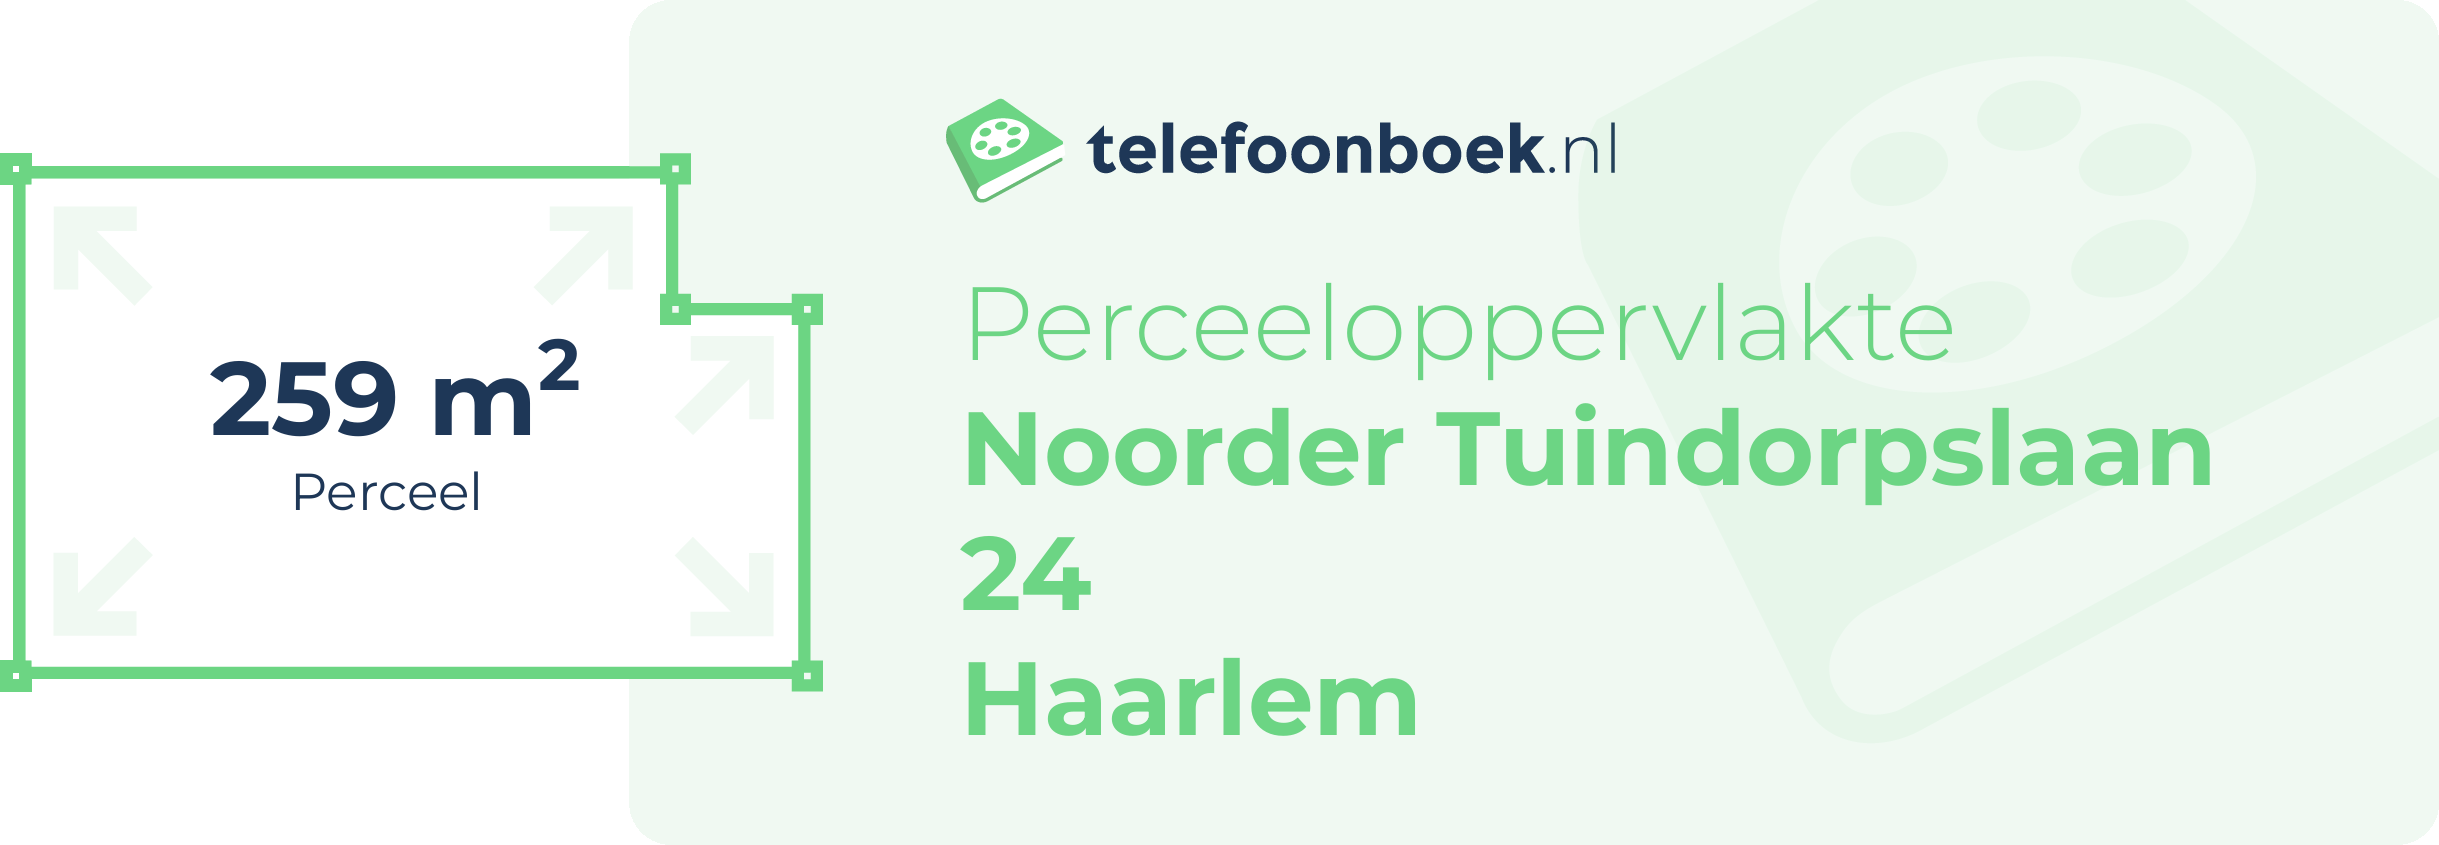 Perceeloppervlakte Noorder Tuindorpslaan 24 Haarlem